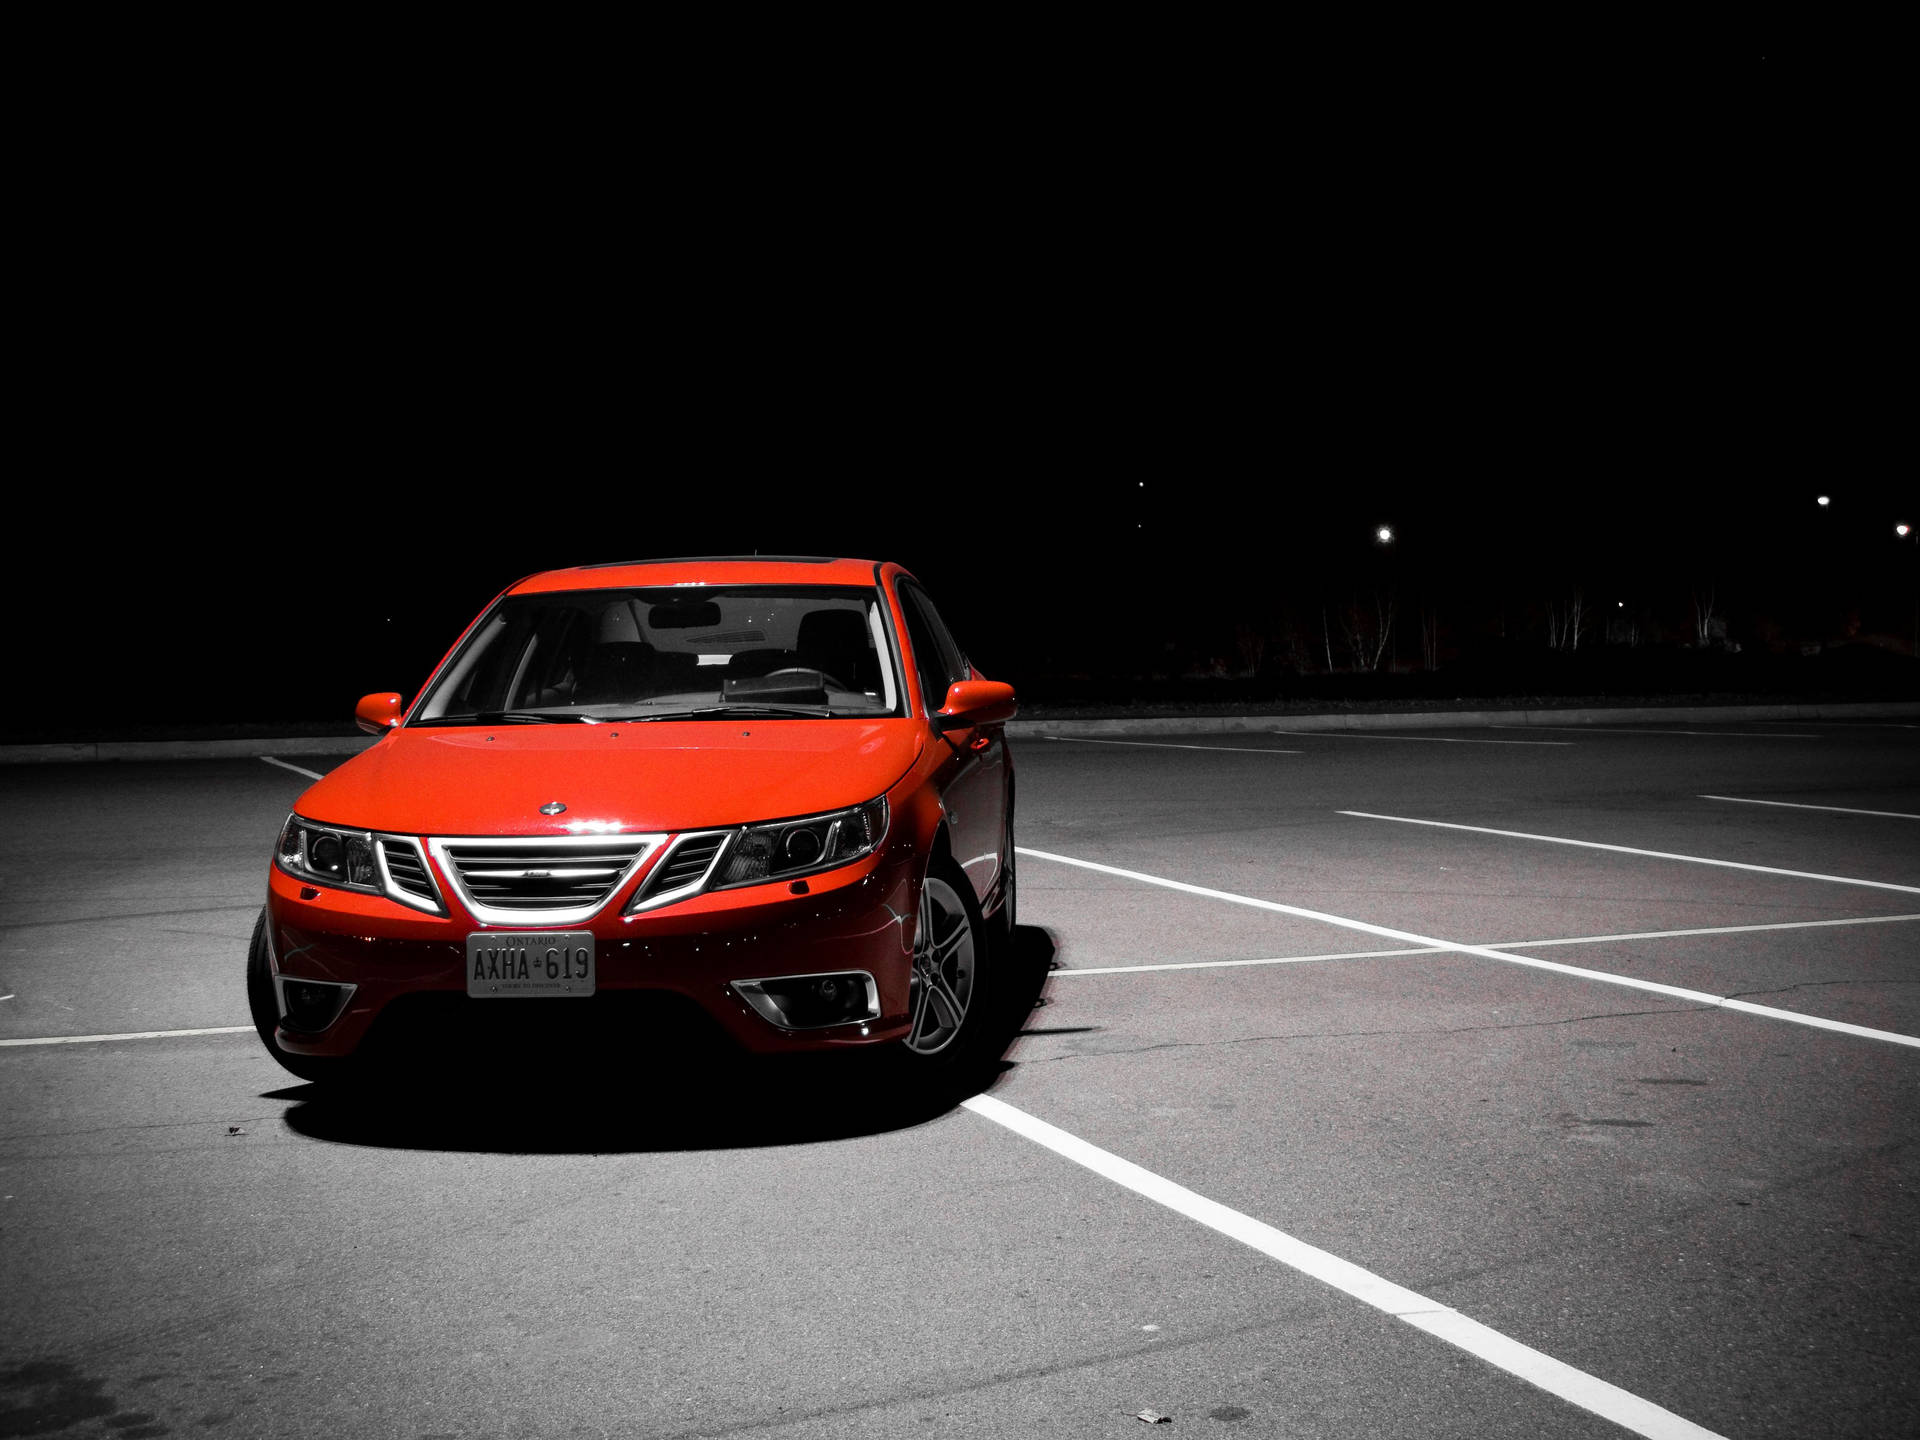 Dark Red Saab Sedan